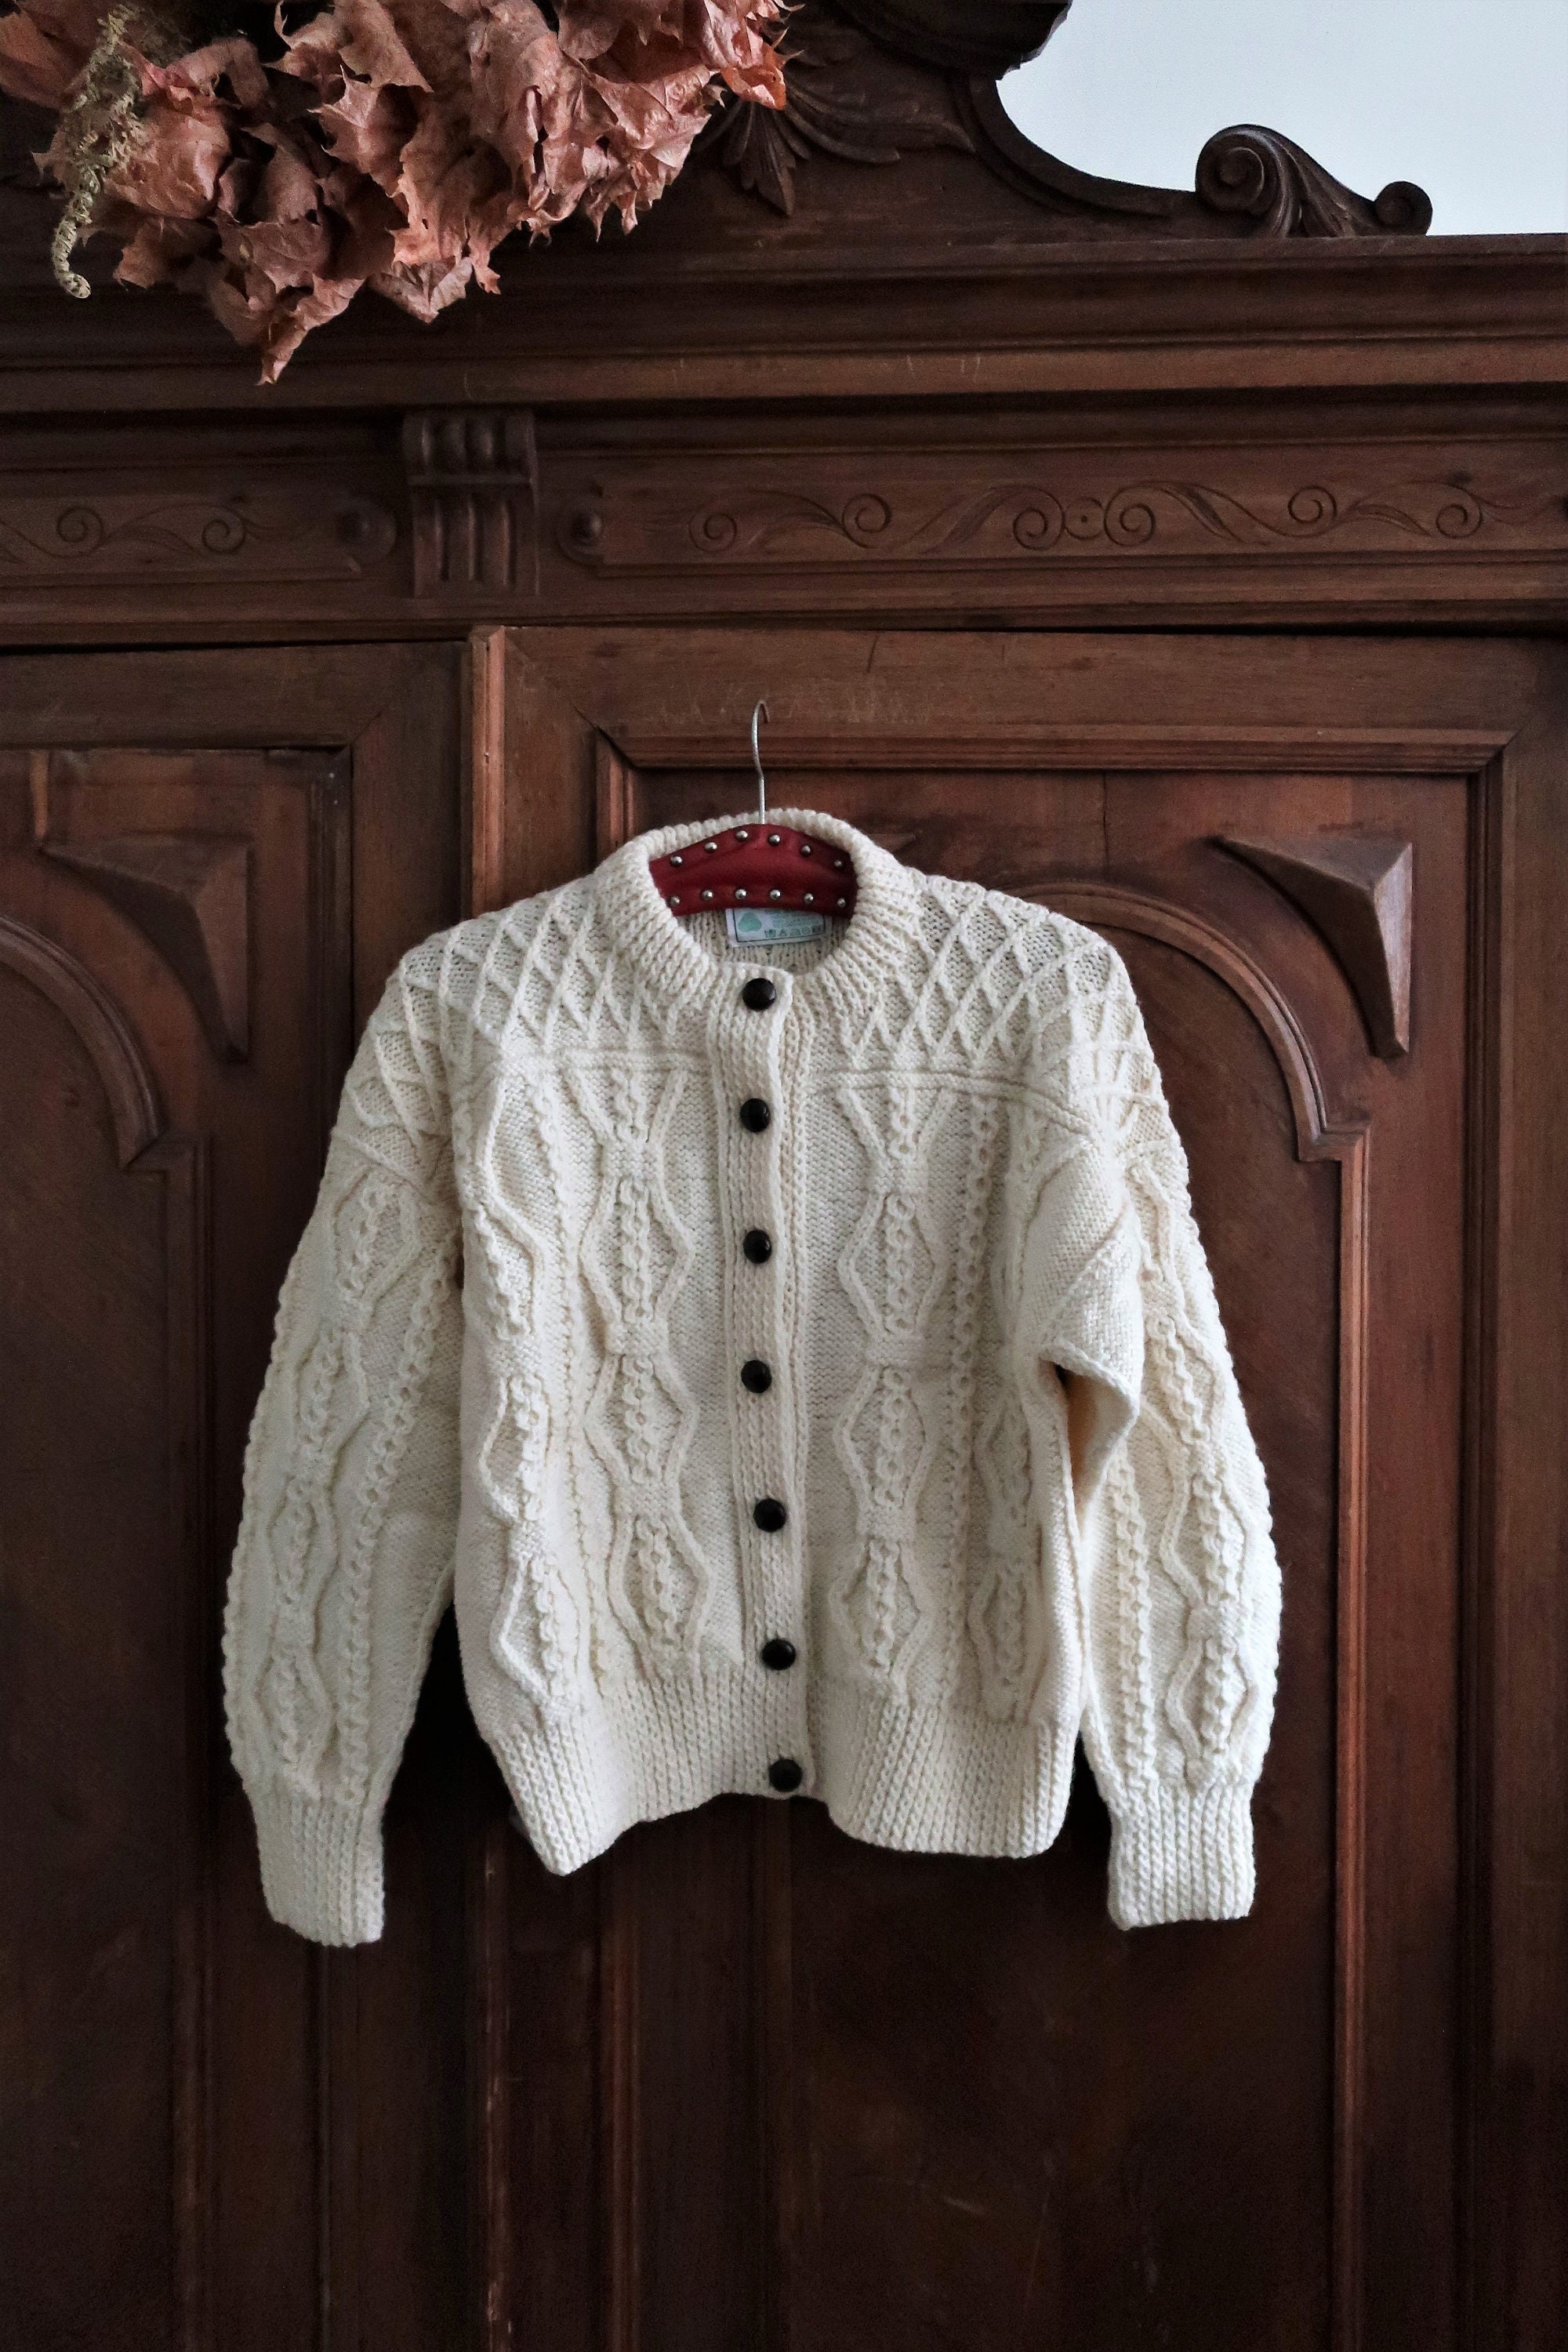 Abbigliamento Abbigliamento donna Maglioni Cardigan Cardigan vintage in lana austriaca maglia Aran bottone su lungo cardigan maglione 